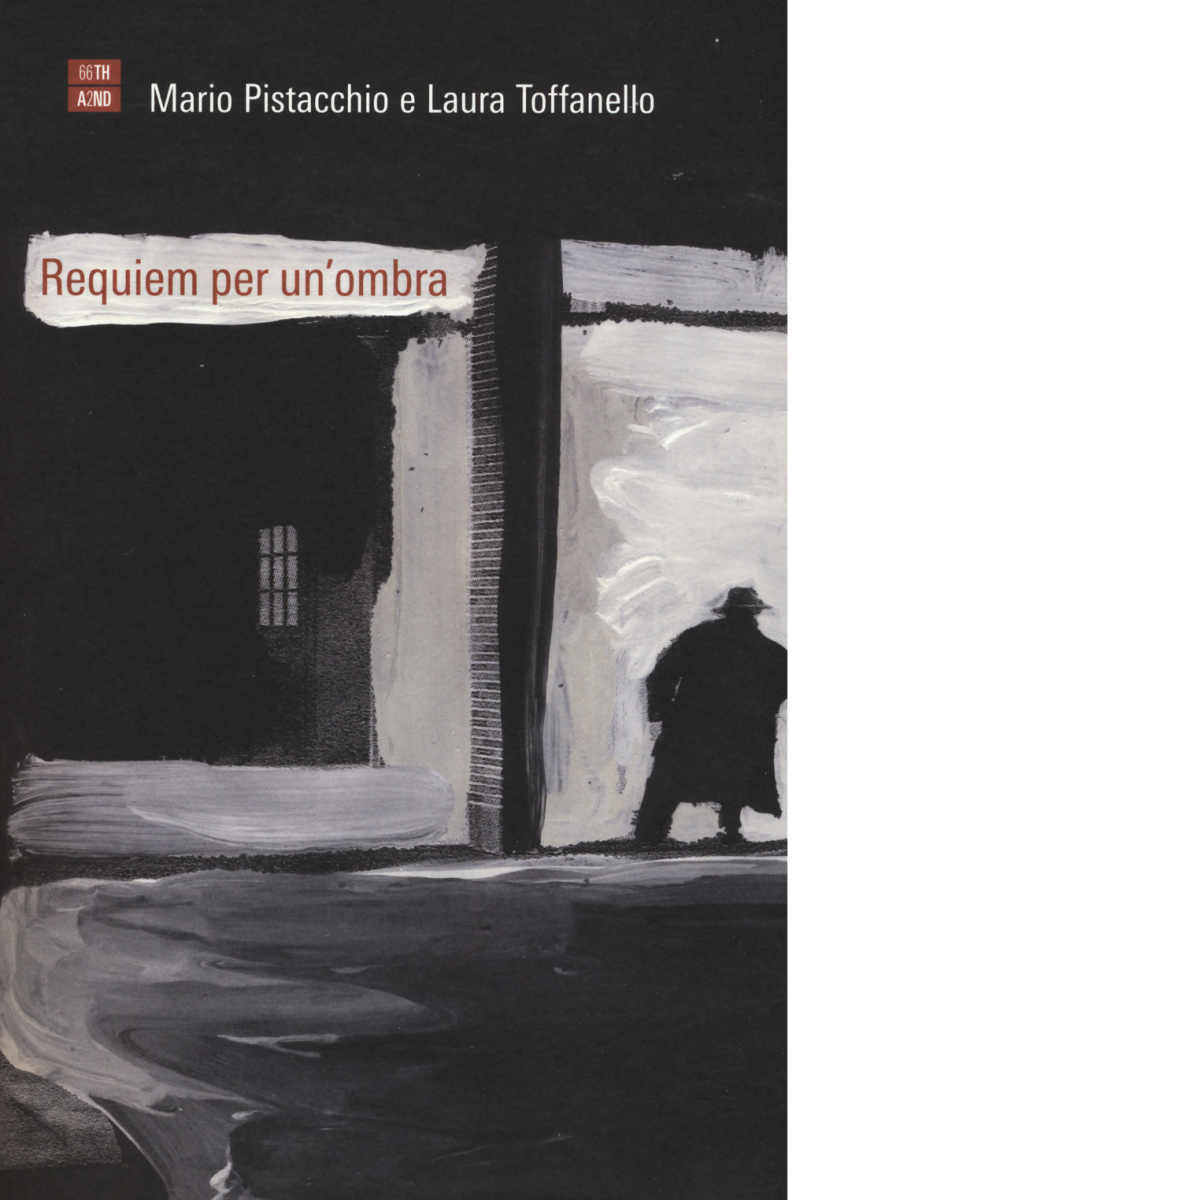 La Requiem per un?ombra di Mario Pistacchio, Laura Toffanello,  2017,  66th And 